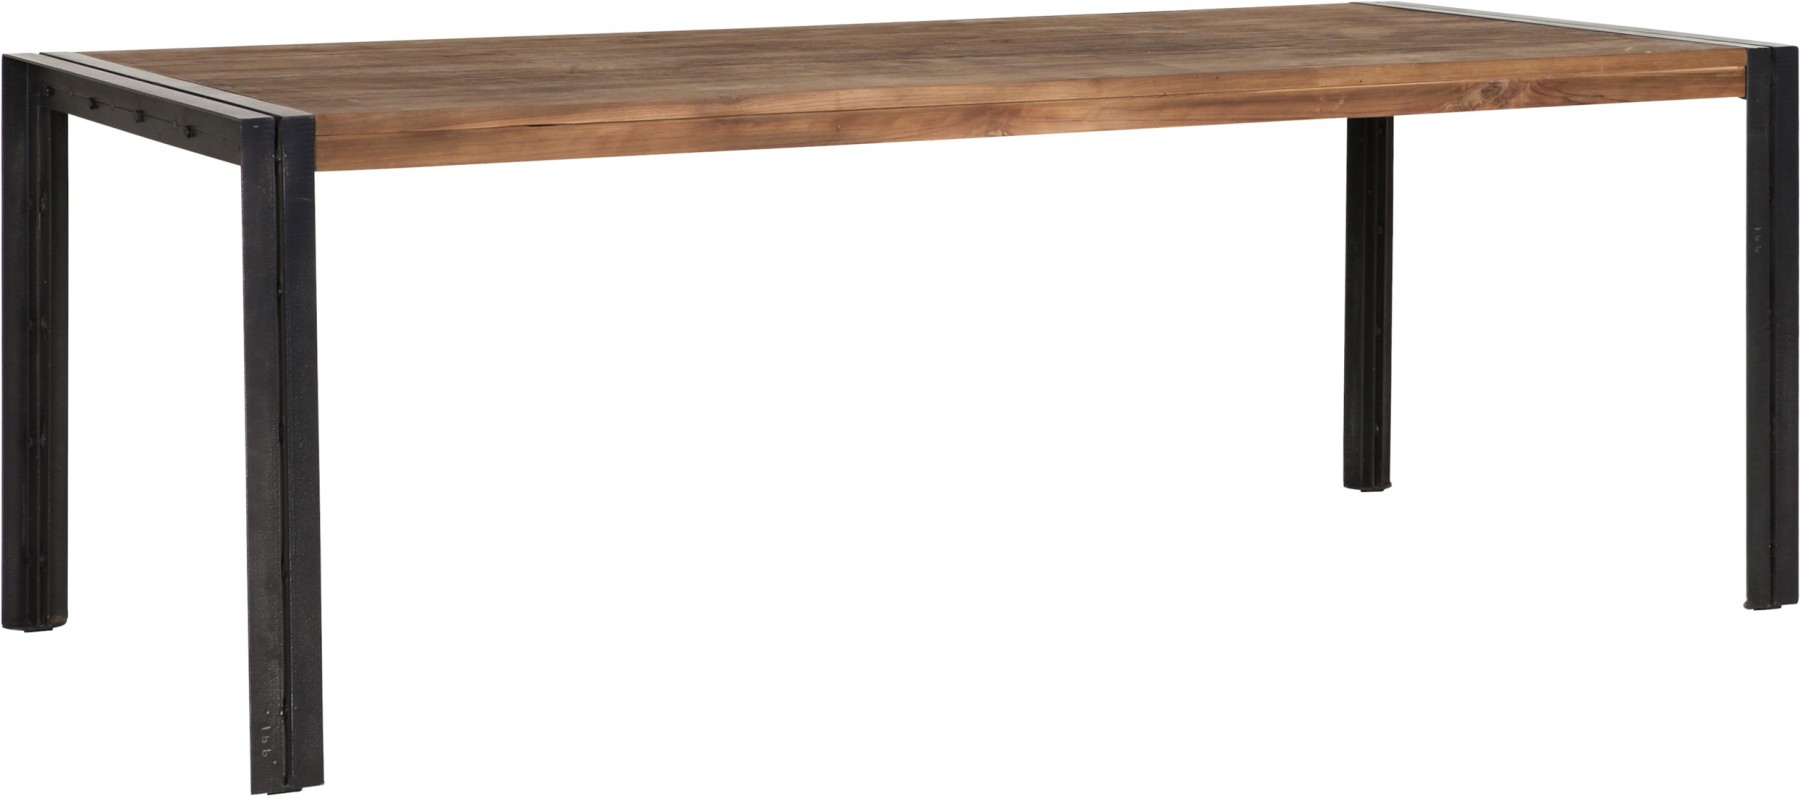 Tisch Industrie Holz Metall, Esstisch Industriedesign Metall, Länge 200 cm